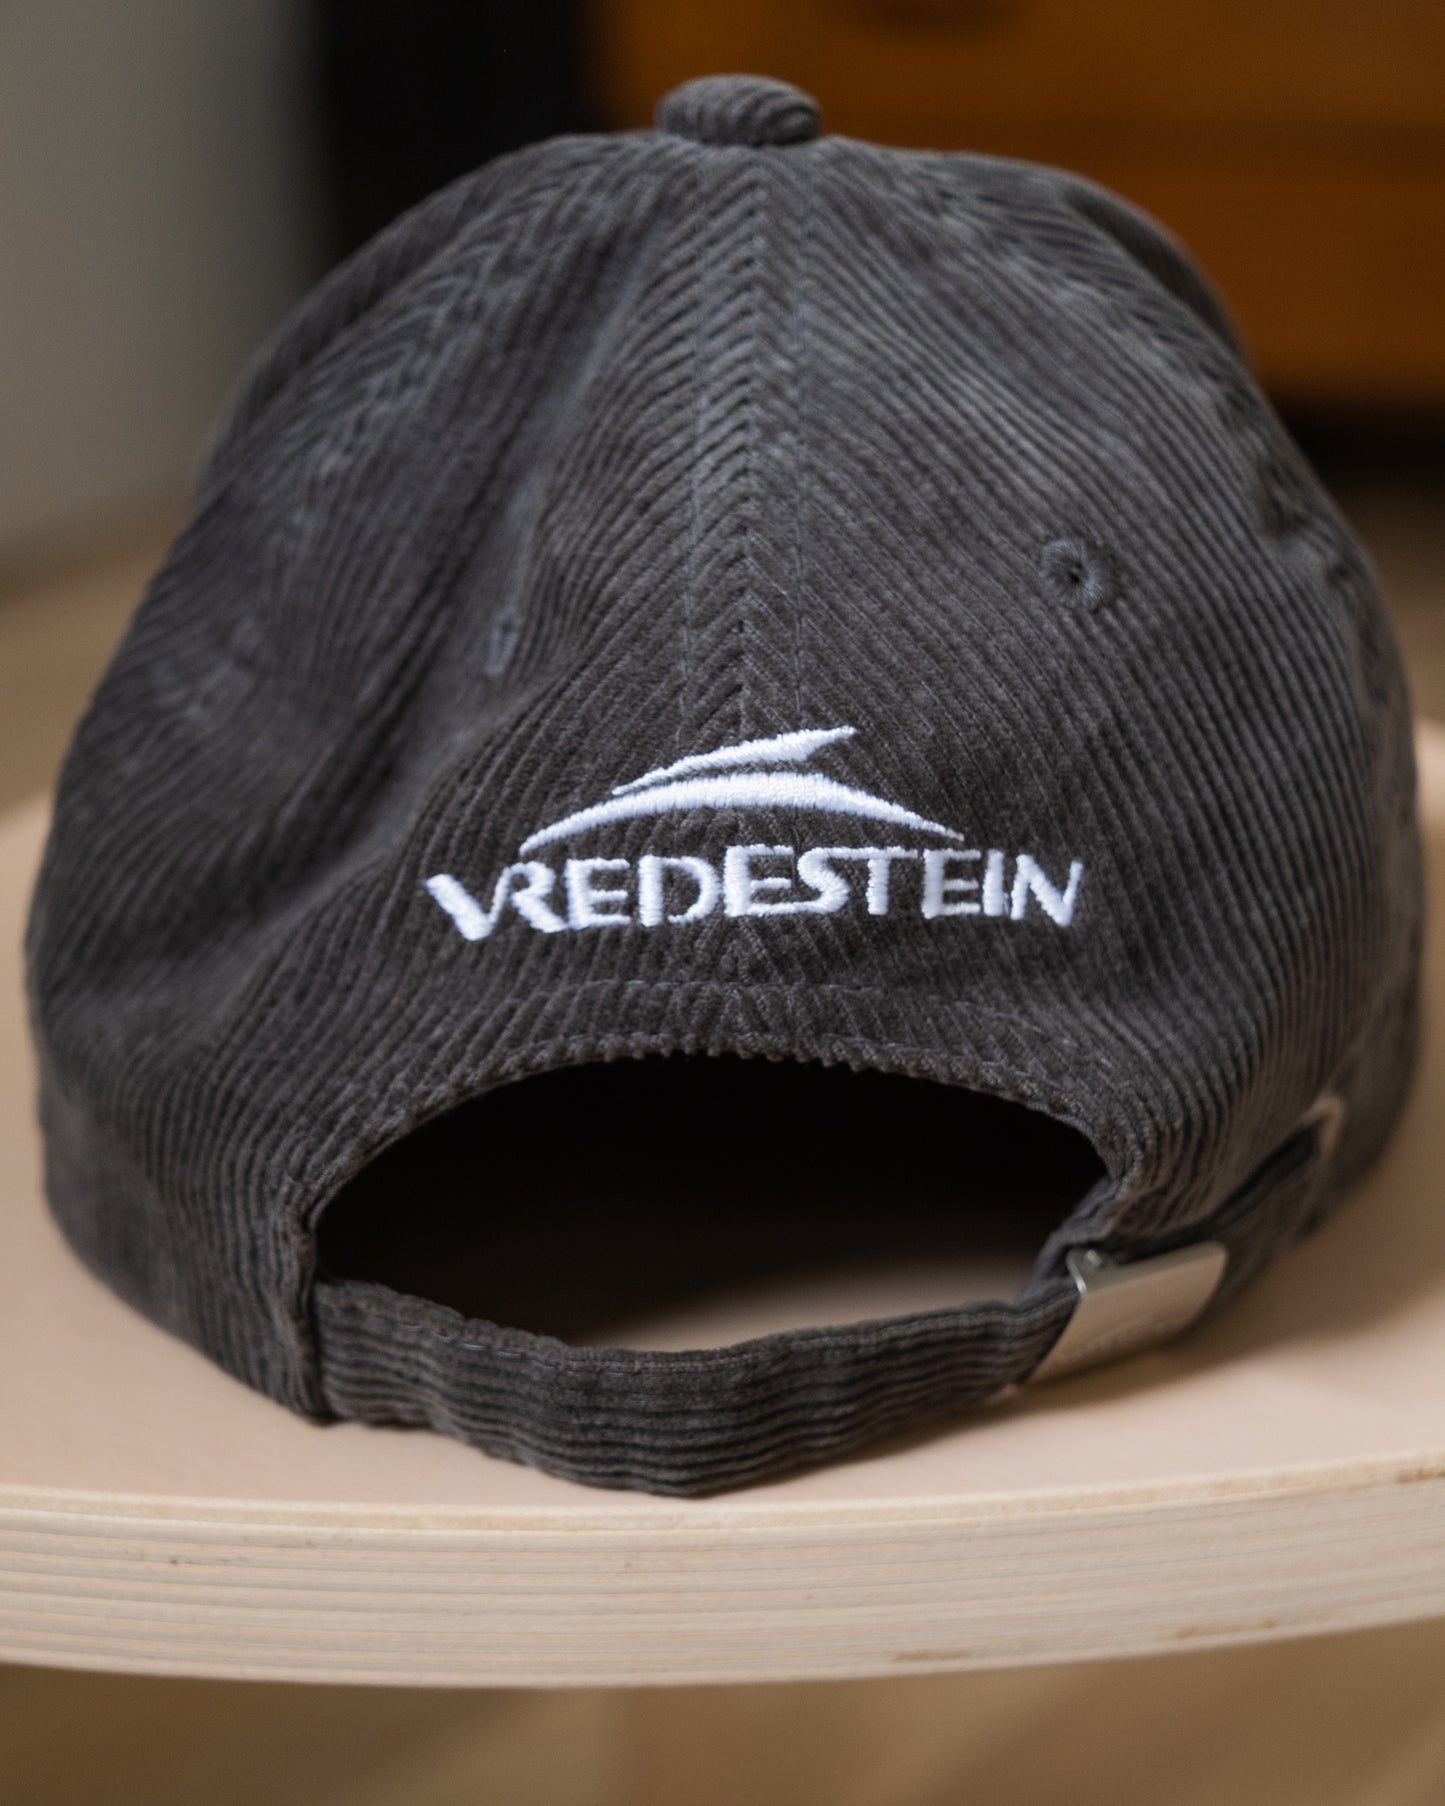 Vredestein Giugiaro Design Hat